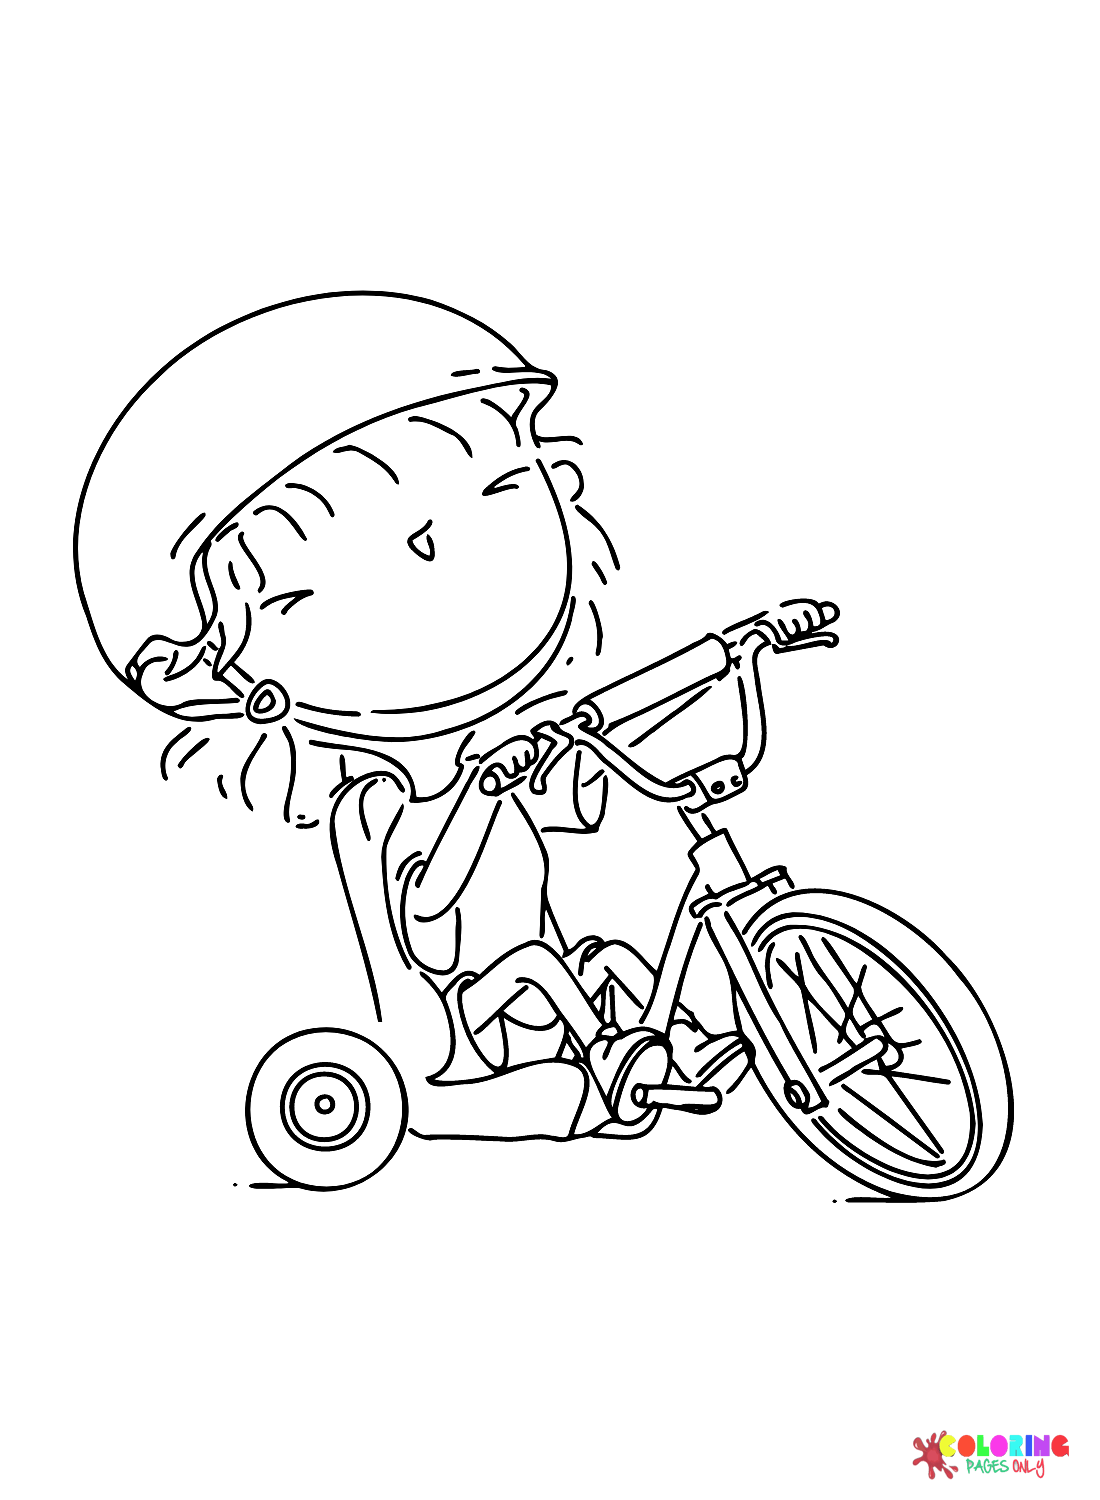 Garota com triciclo from Triciclo